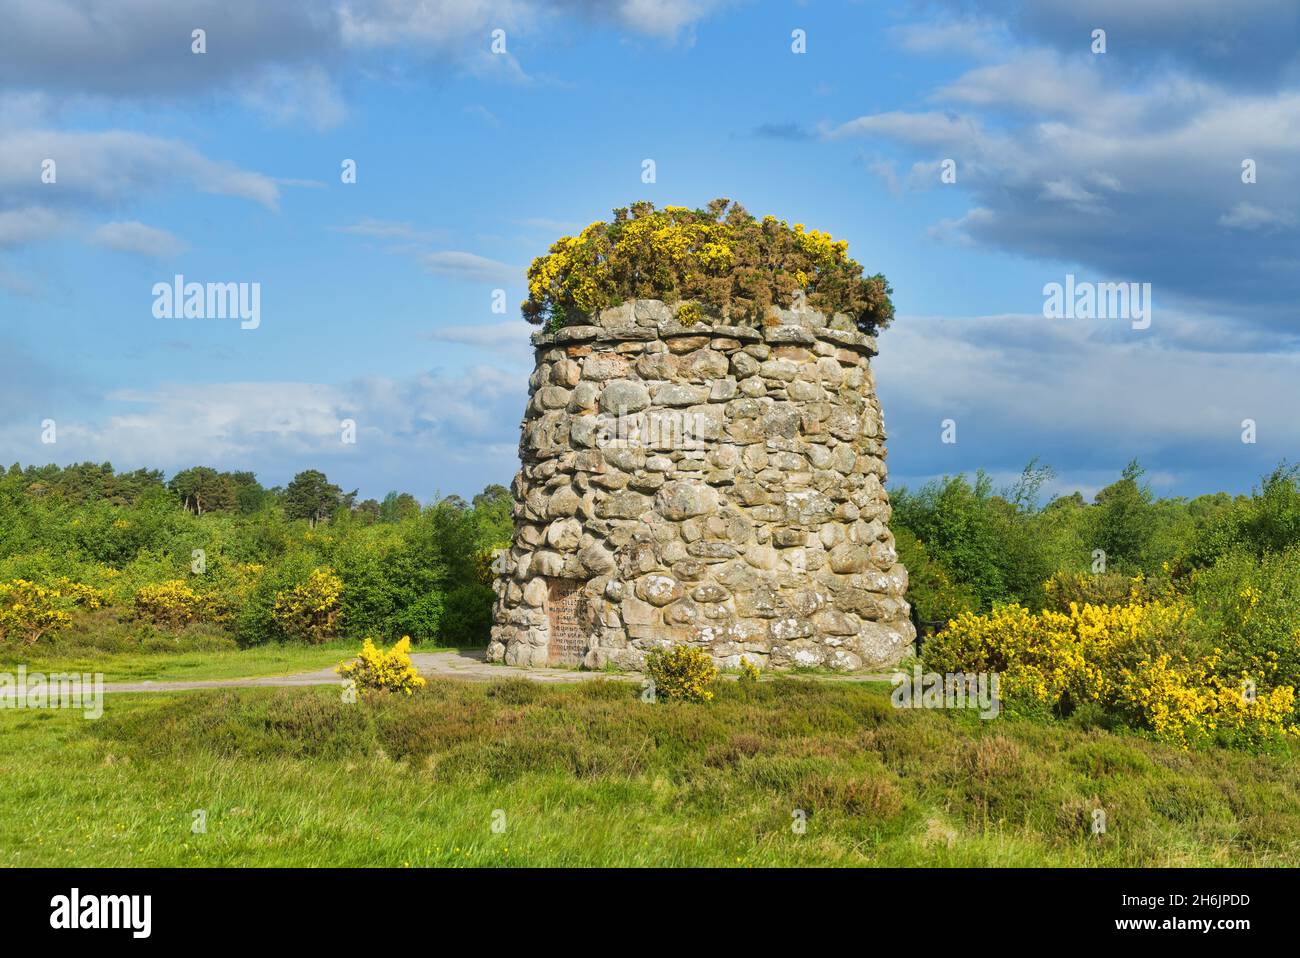 Champ de bataille de Culloden, Cairn, monument, Gorse brillant, ciel bleu,Inverness, Highland, Écosse, Royaume-Uni Banque D'Images